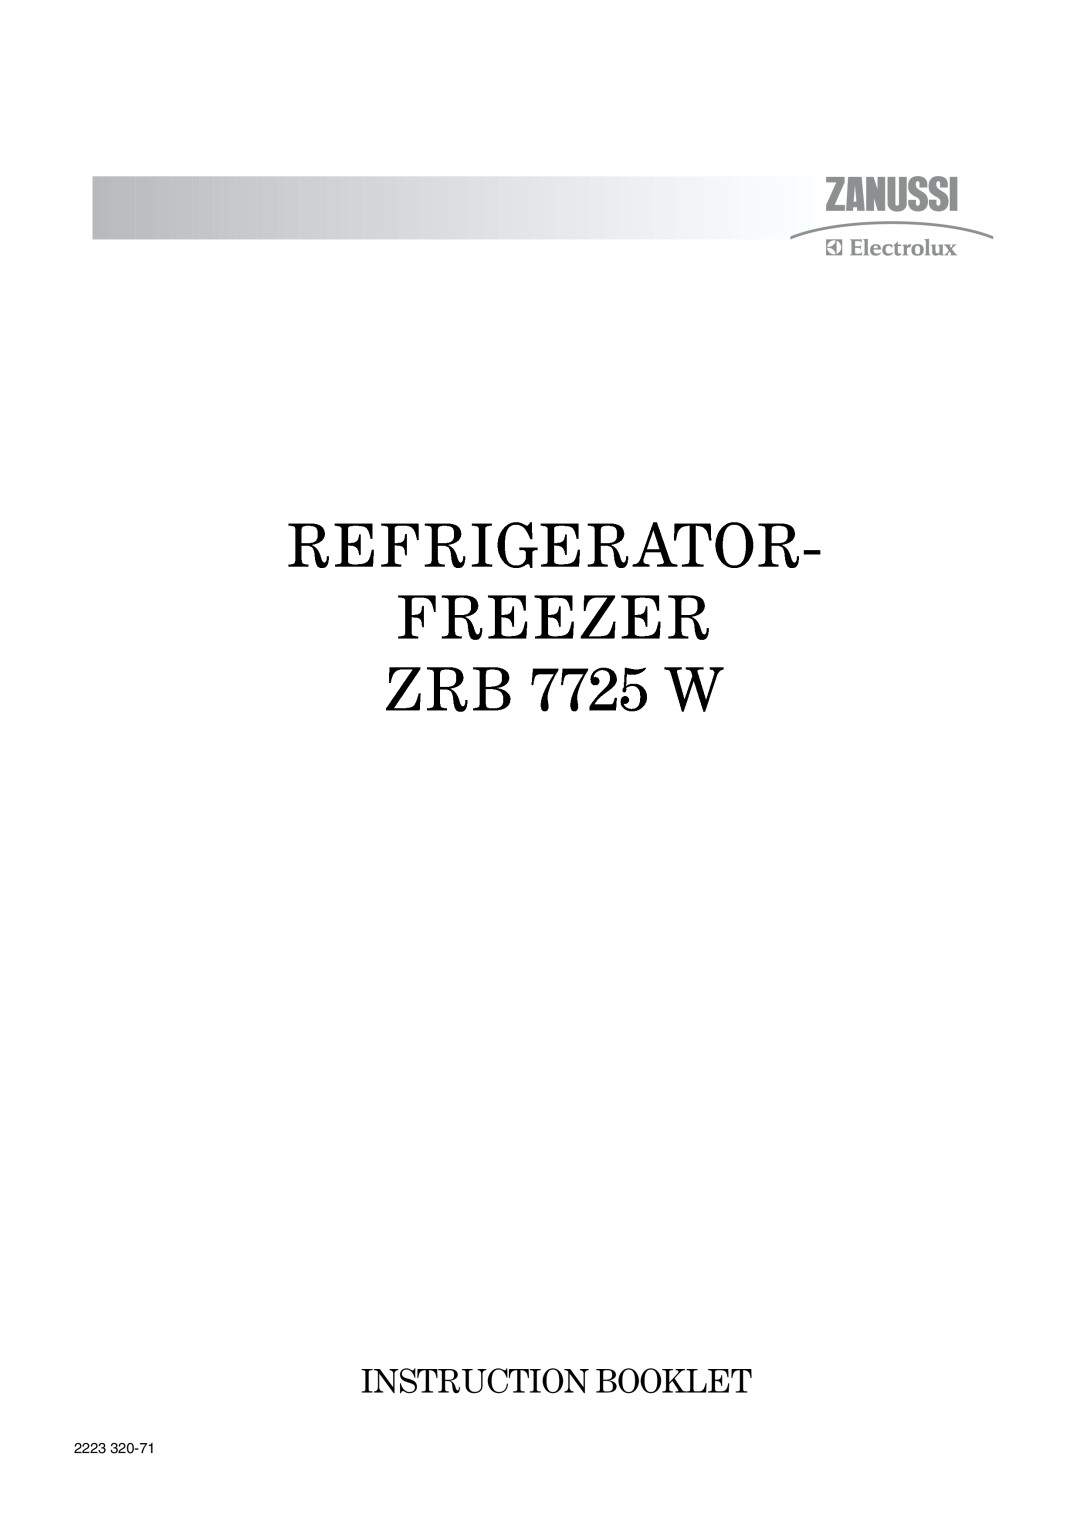 Zanussi manual REFRIGERATOR FREEZER ZRB 7725 W, Instruction Booklet, 2223 